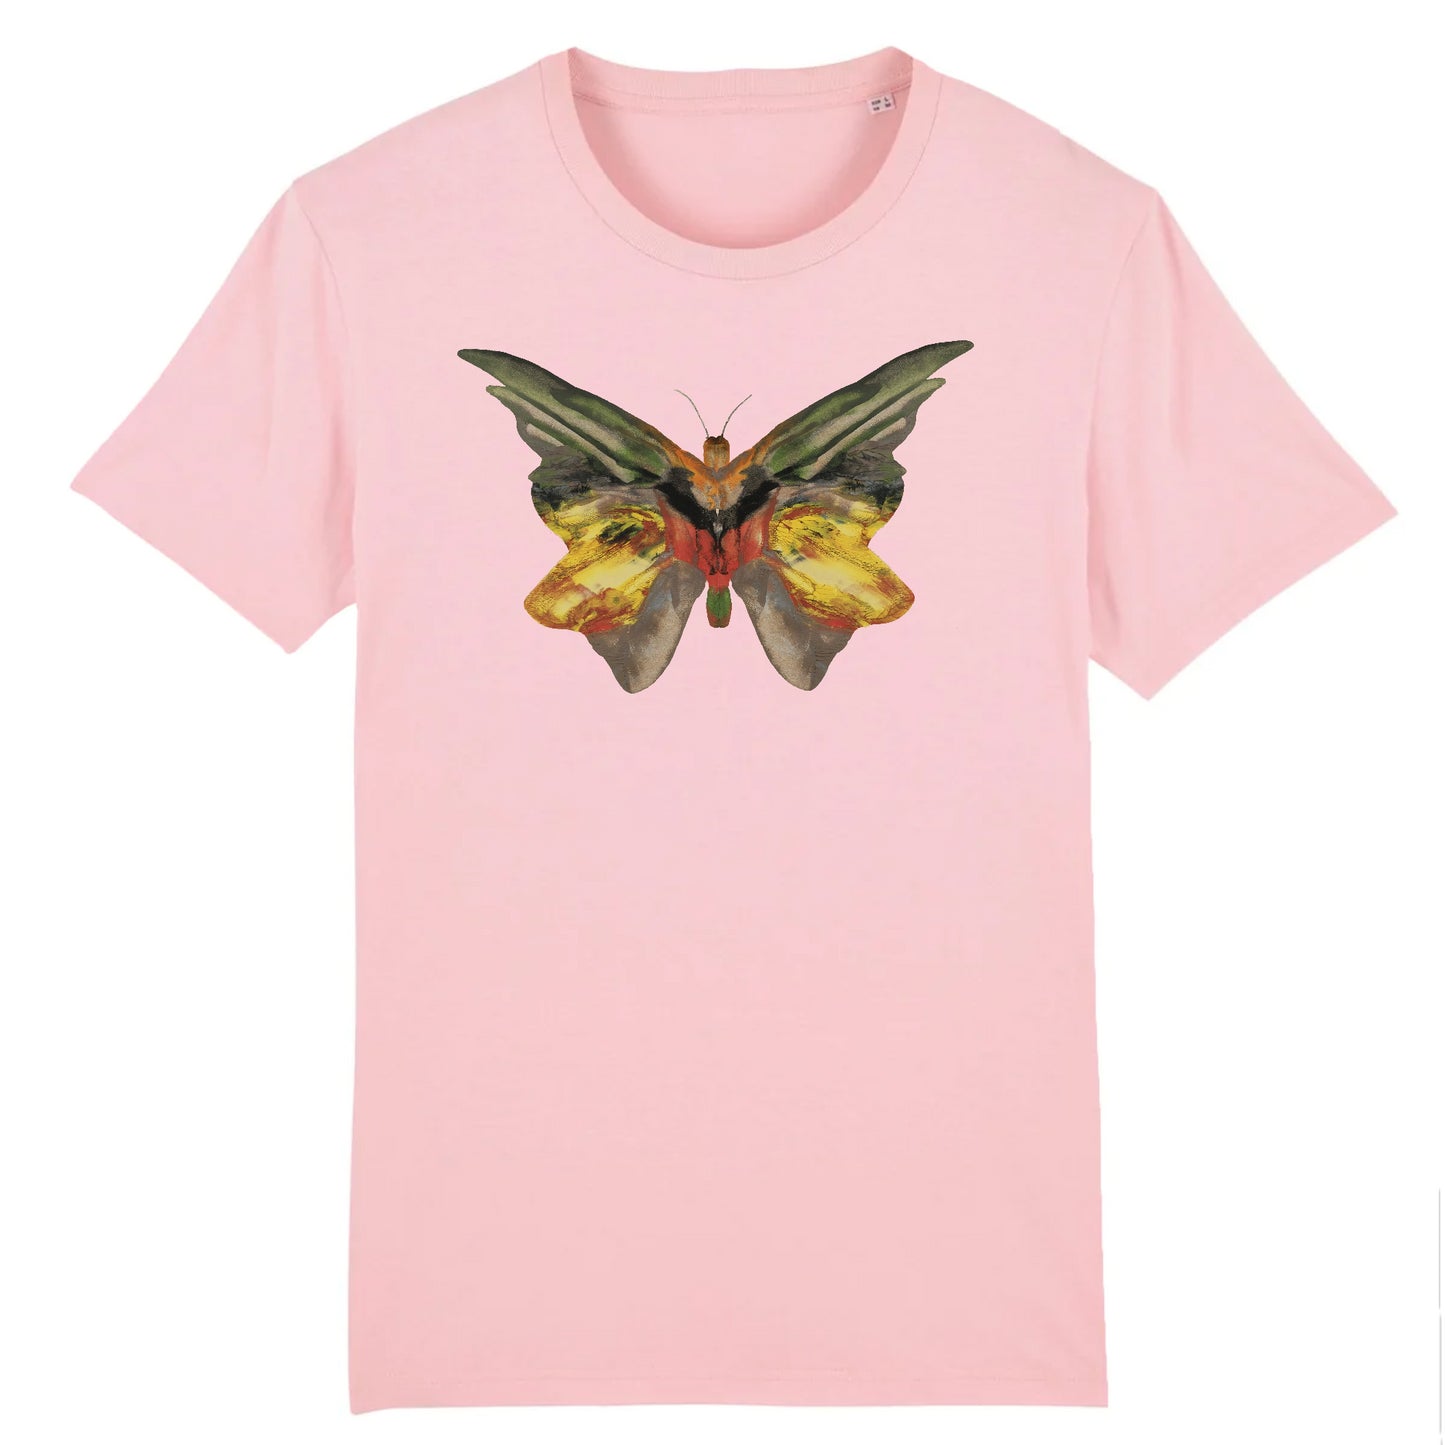 Butterfly 1 by Albert Bierstadt, c.1890 - Organic Cotton T-Shirt